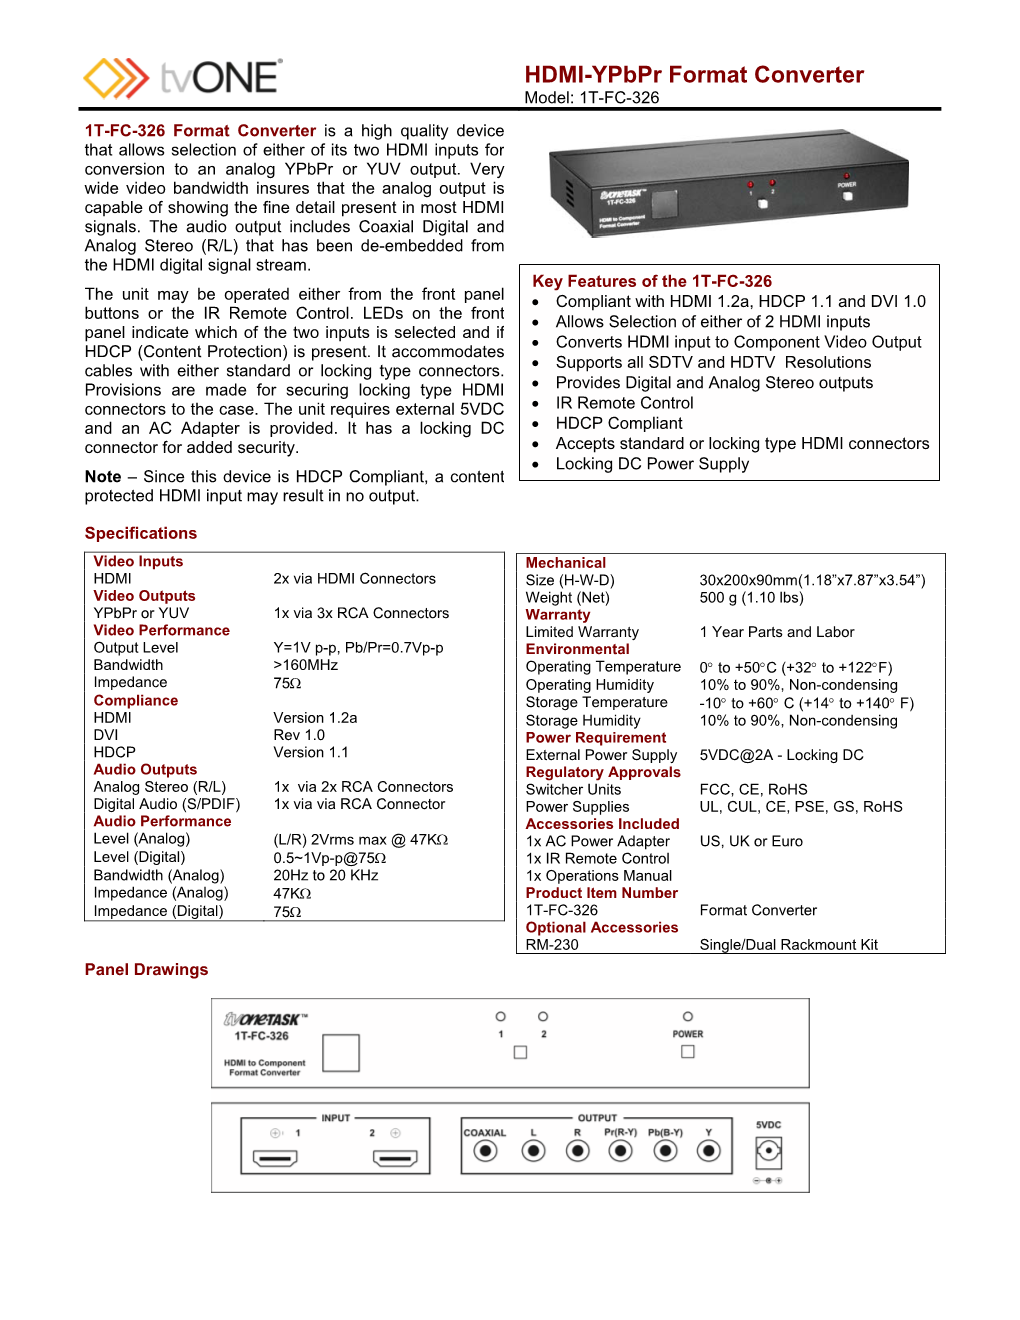 HDMI-Ypbpr Format Converter